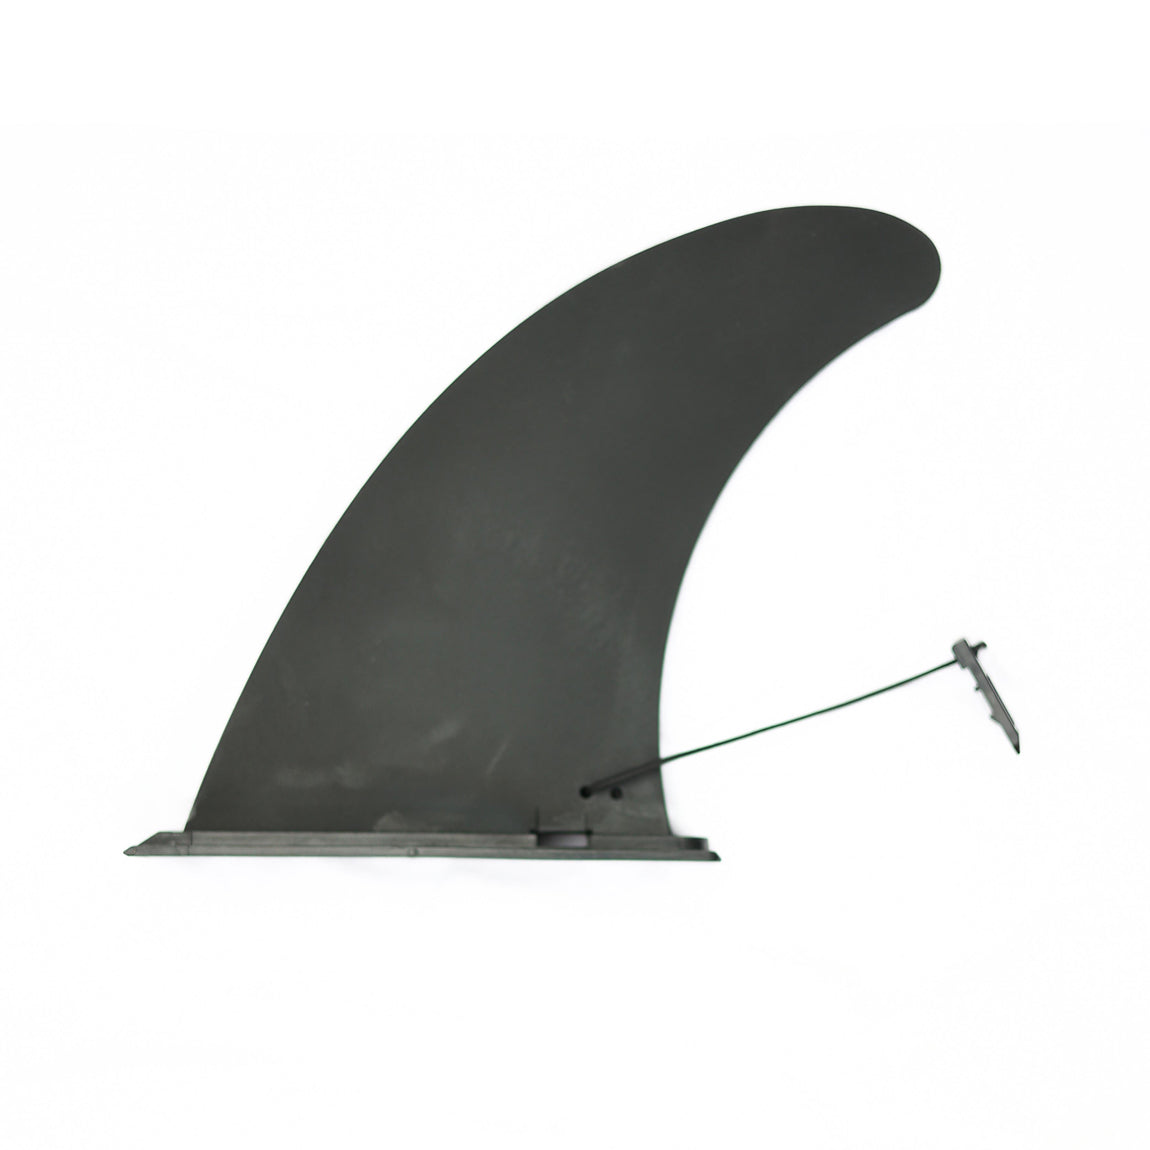 Bondi Şişirilebilir Paddle Board - SUP 305 cm